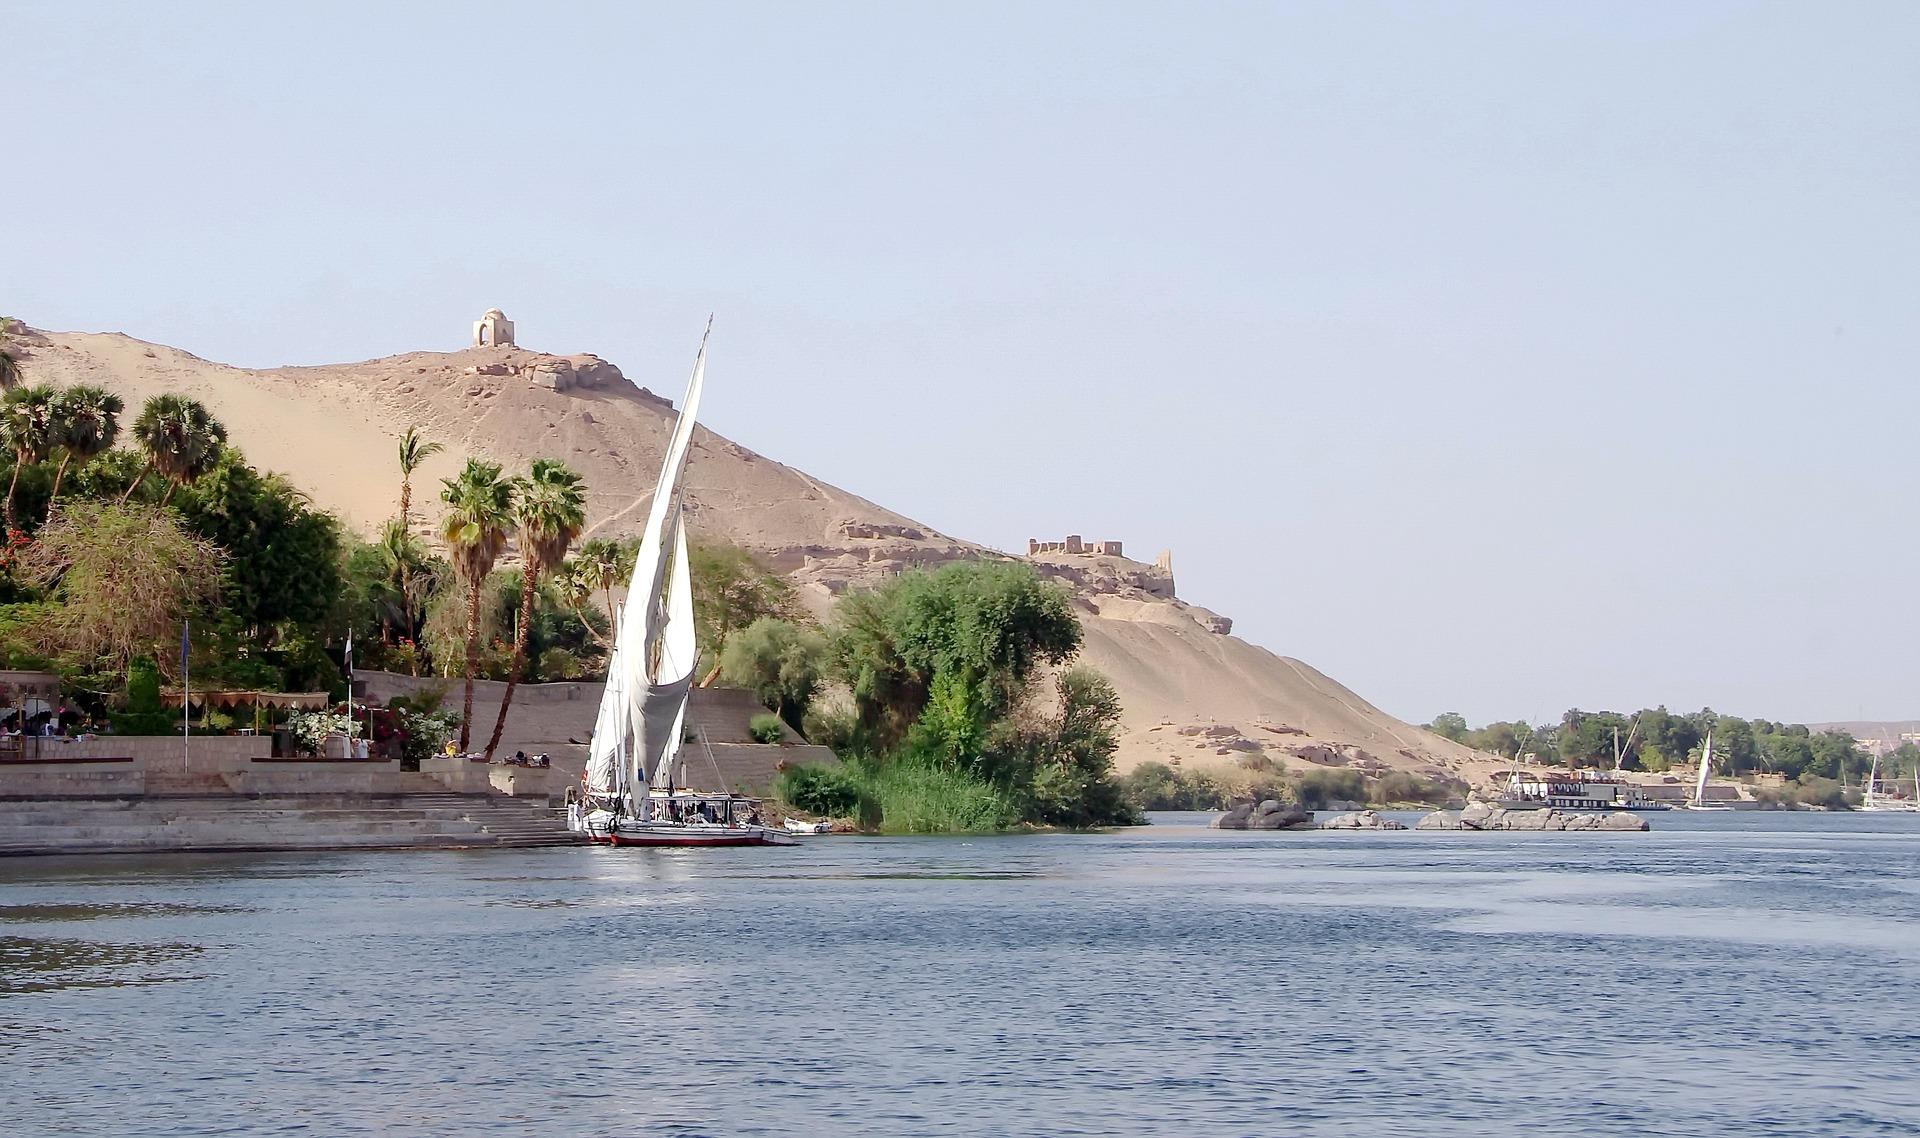 Bark River Louksor,petit bras du Nil,barque de voyageurs,Boats,Luxor,Egypt,Nile River,1858 